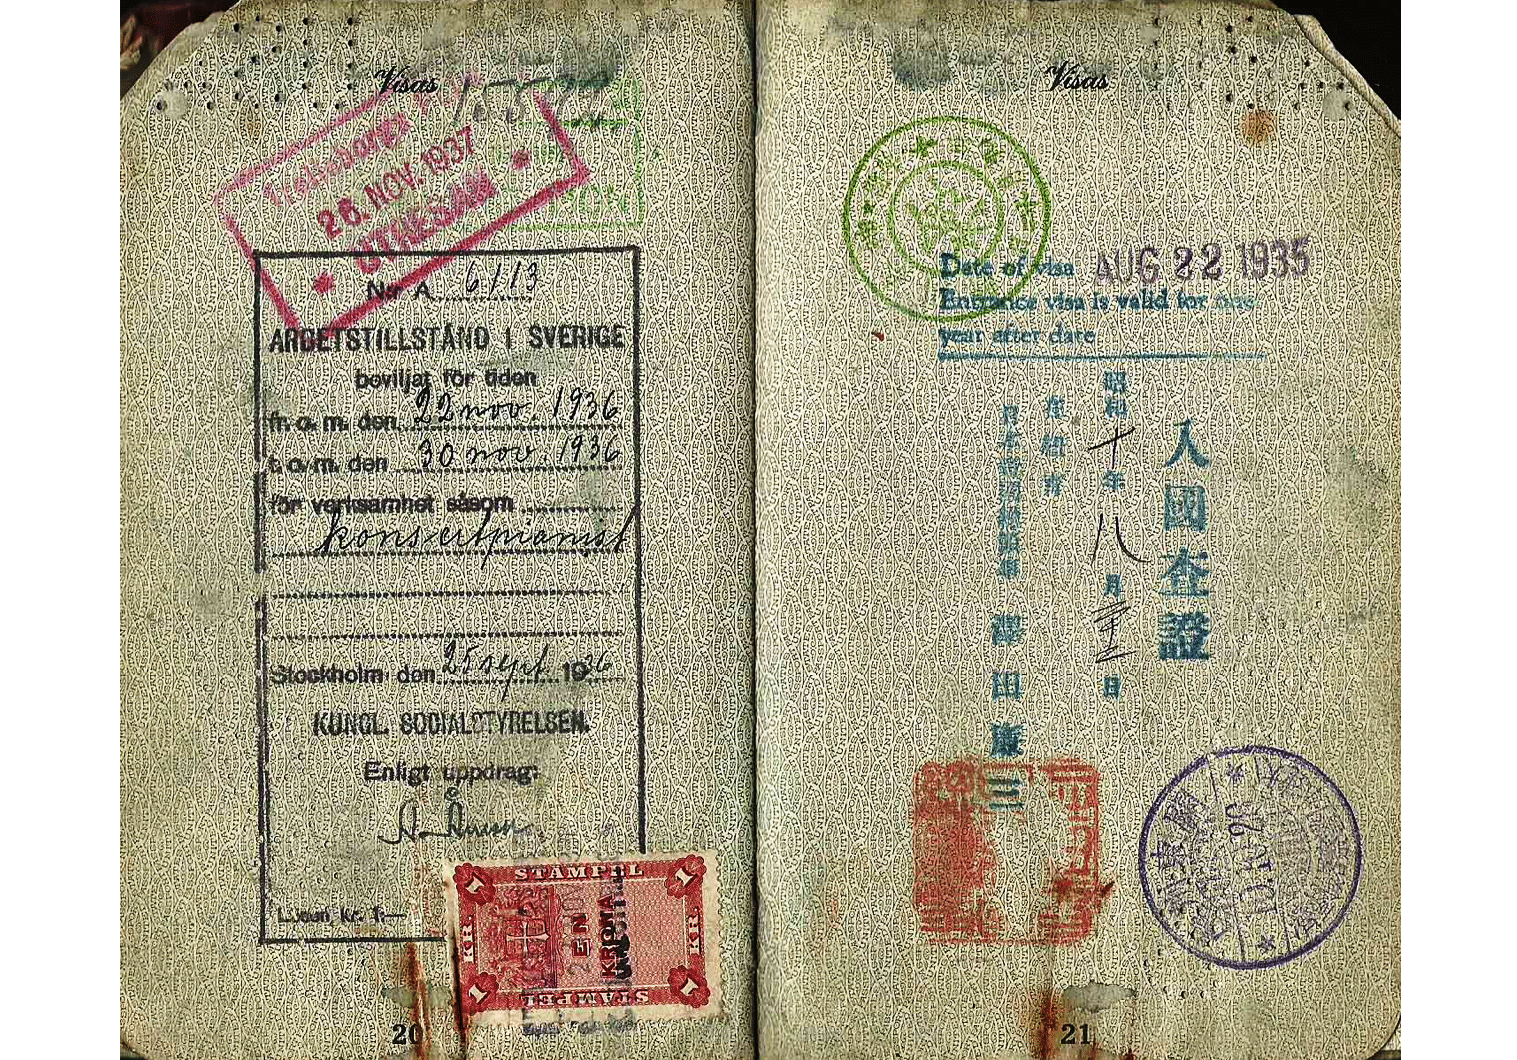 Shura Cherkassky 1934 US issued passport.